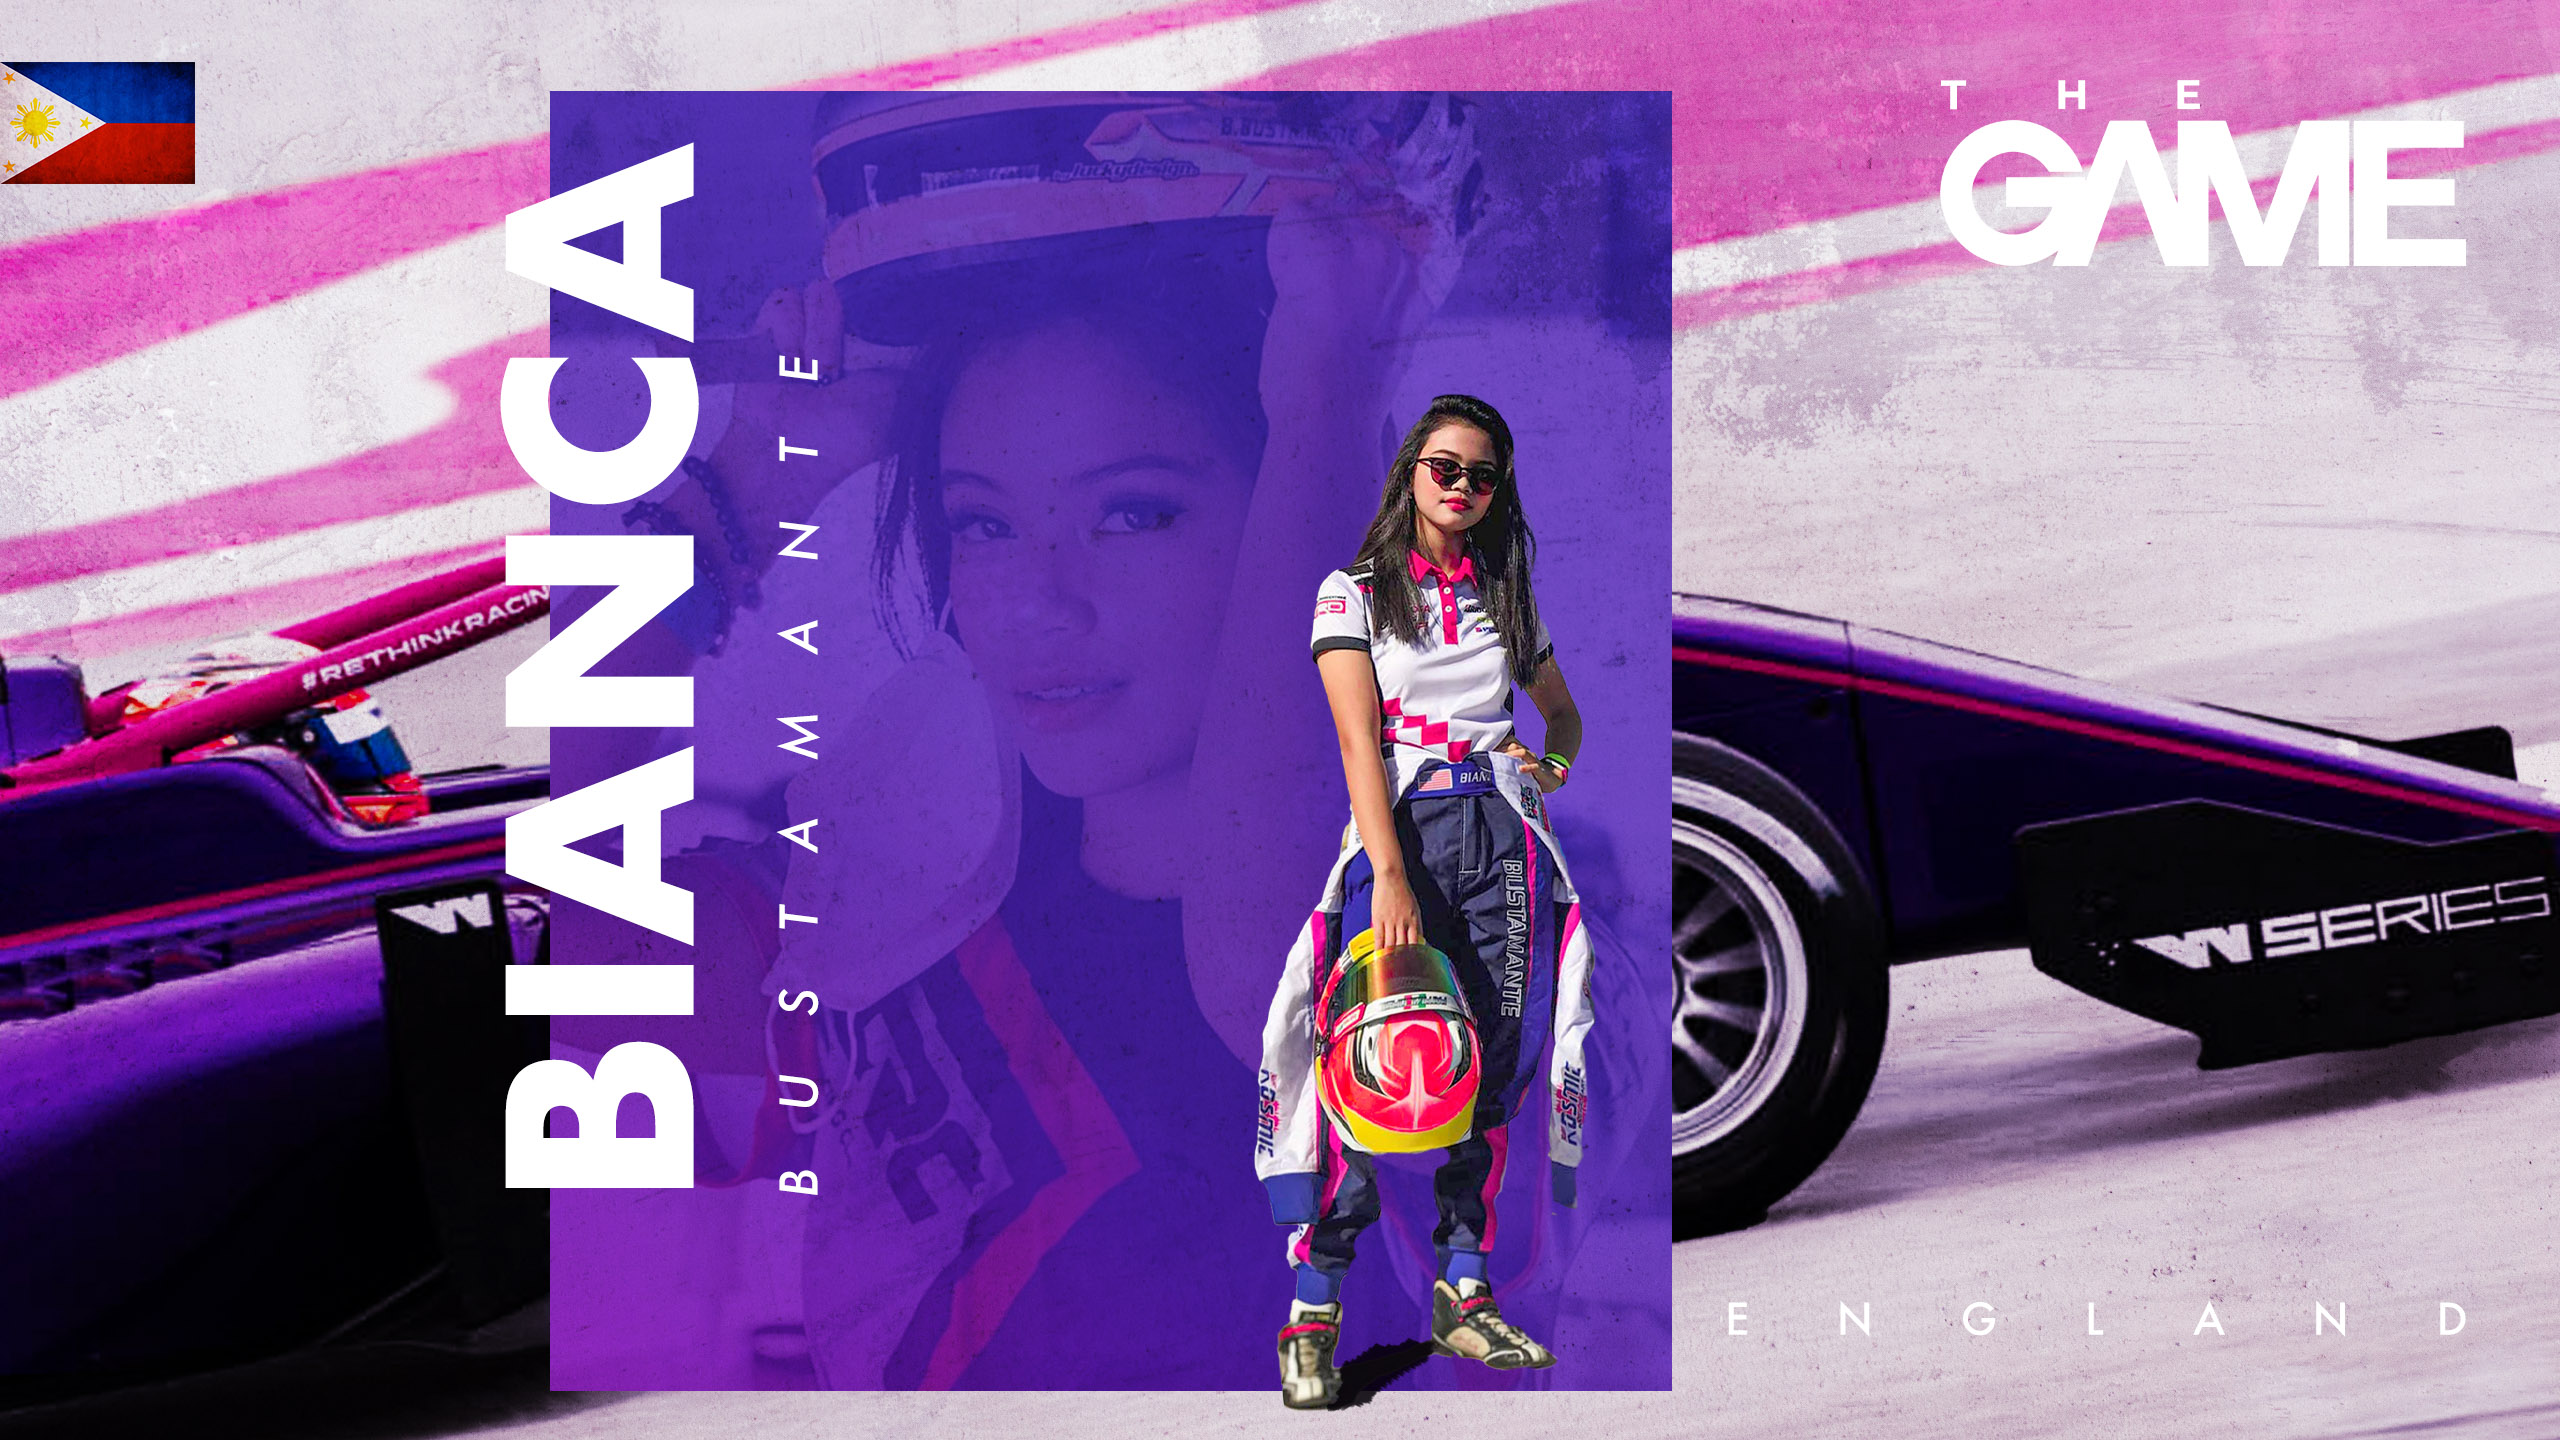 Racer Bianca Bustamante